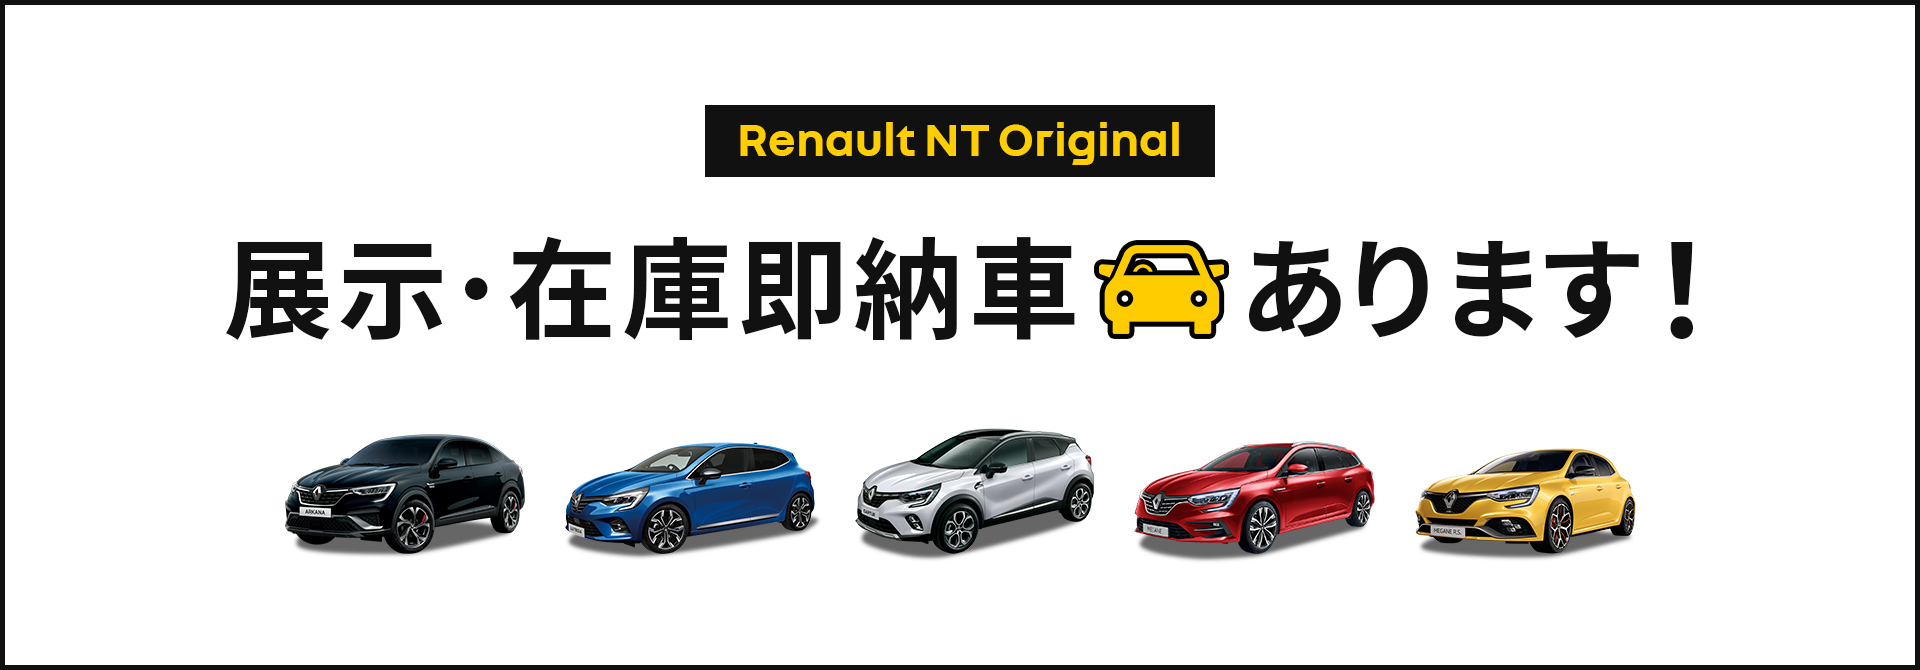 Renault NT Original Campaign 展示・在庫即納車あります！